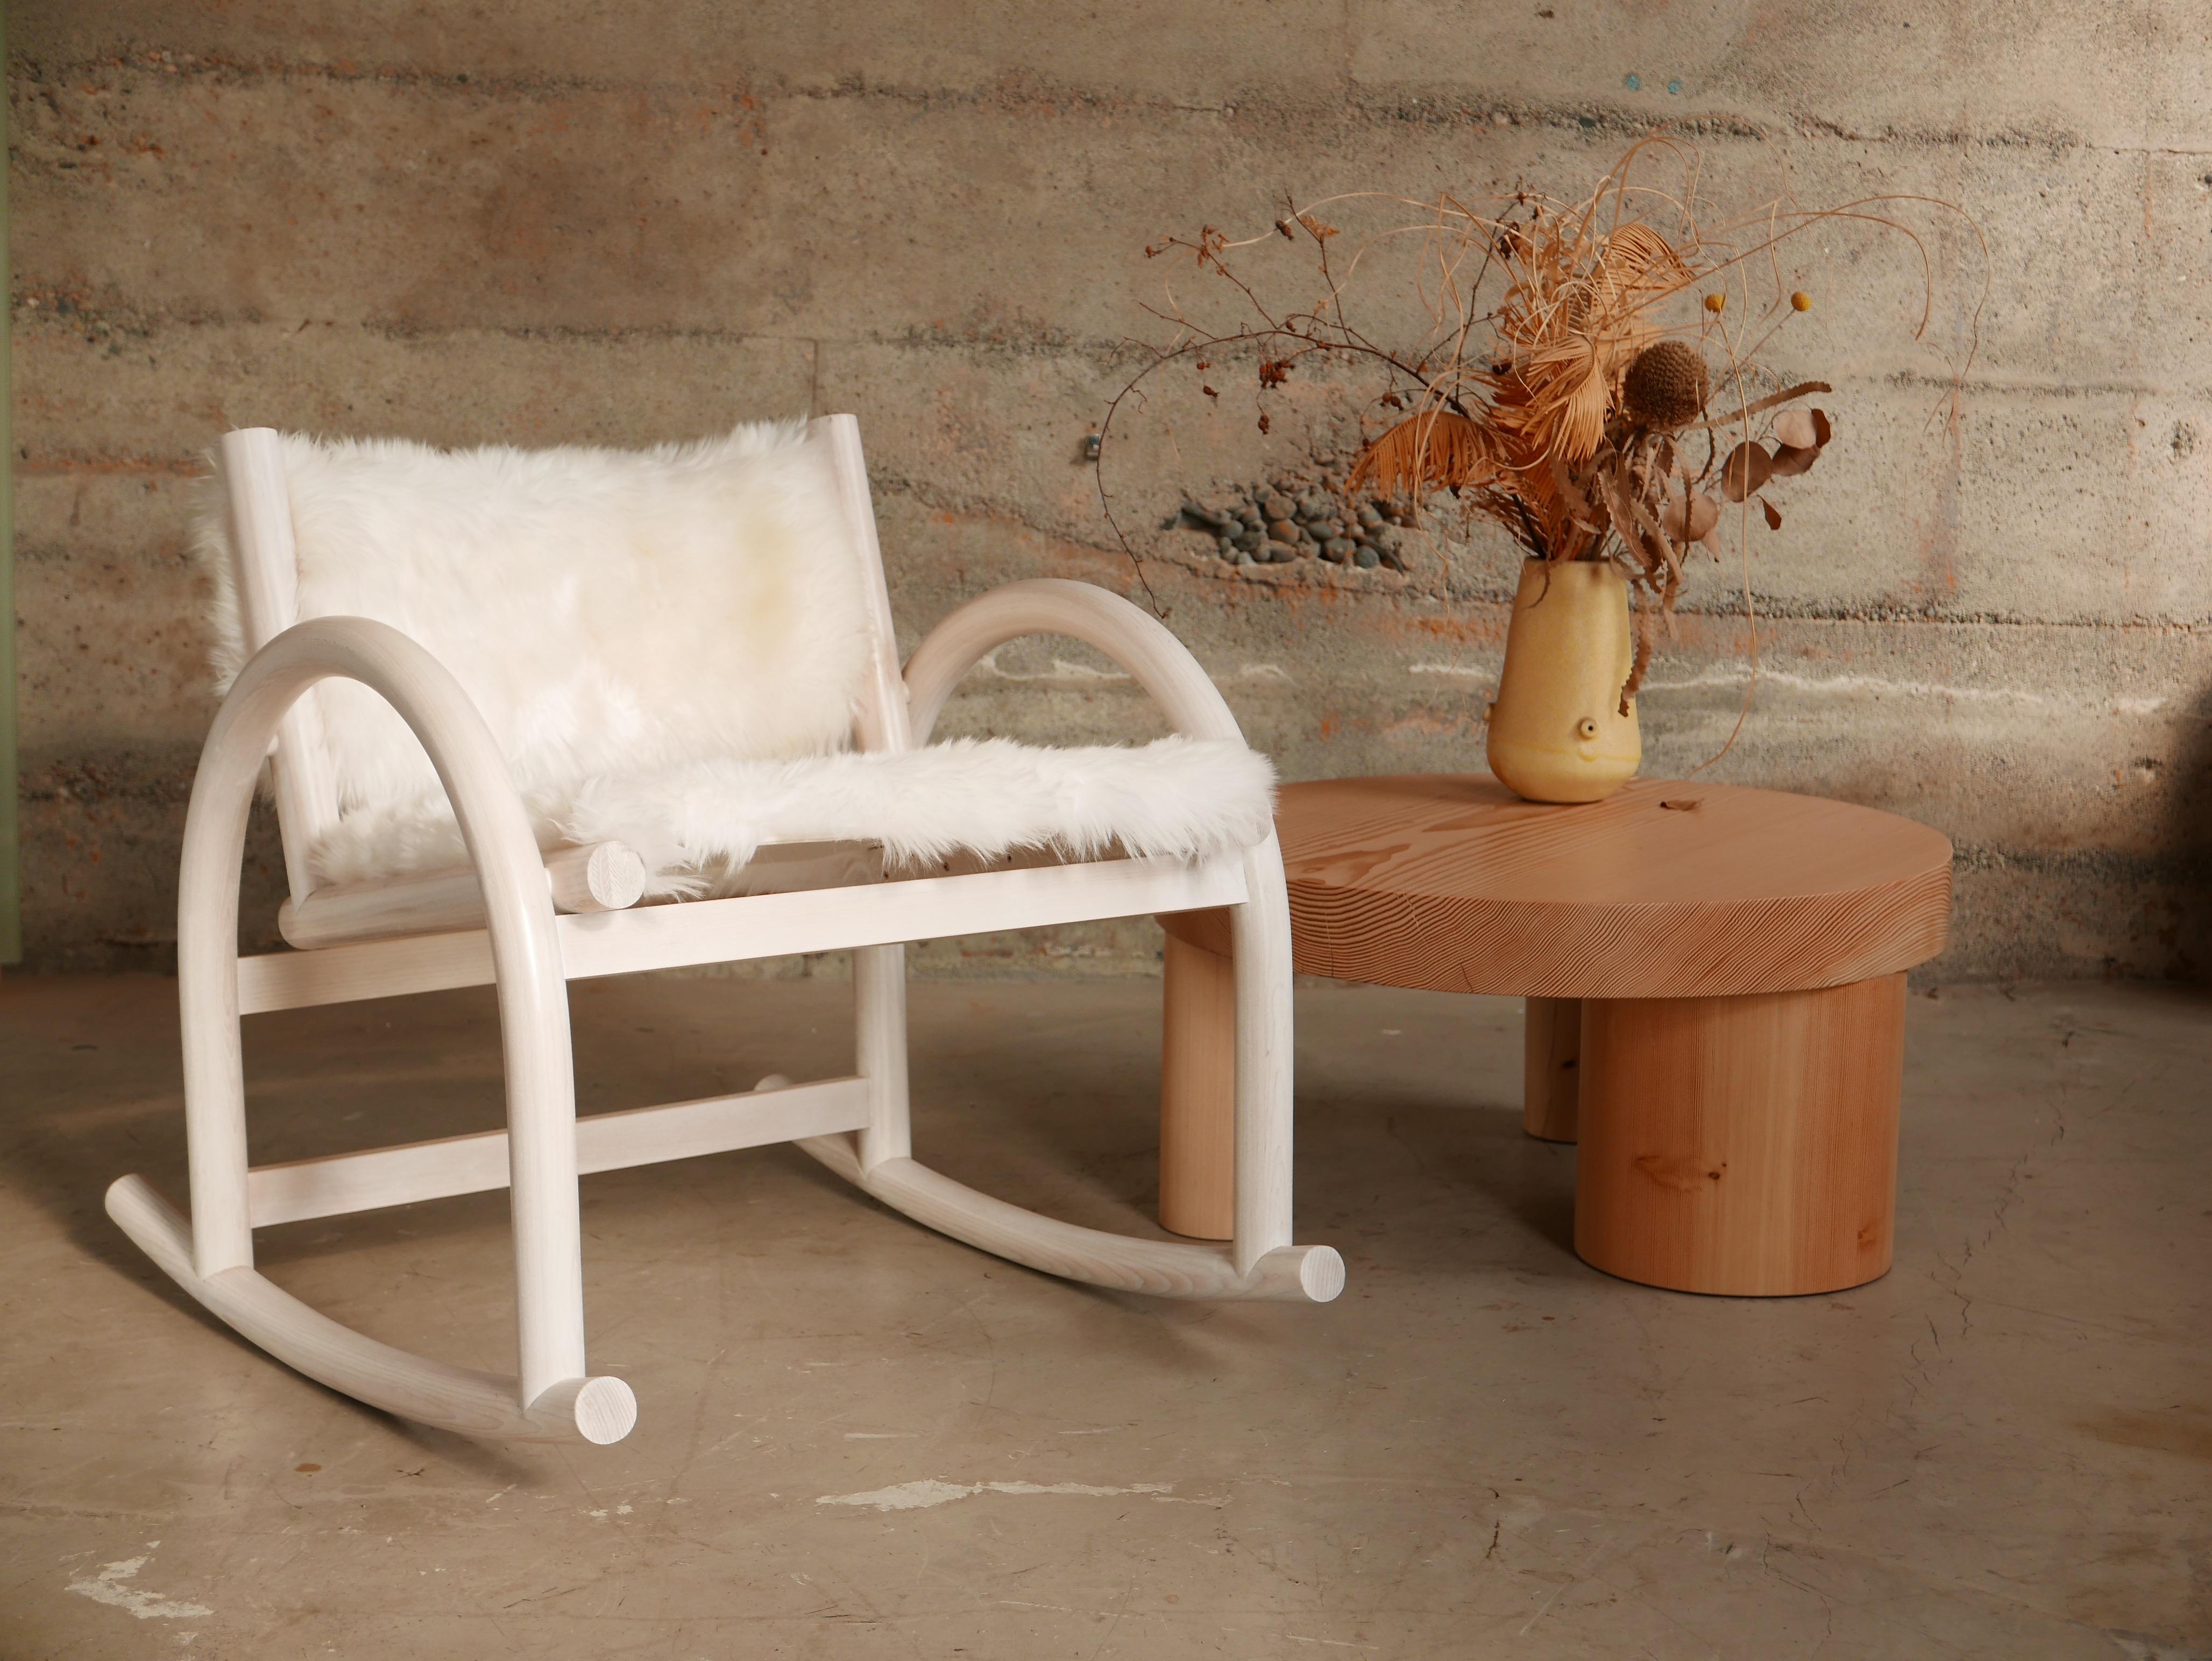 Der neu gestaltete Shepherd's Chair von Hinterland ist das Ergebnis jahrelanger Design- und Prototypenentwicklung. Inspiriert durch die enge Beziehung zwischen den Werkzeugen eines traditionellen Hirten, den Tieren und dem Land. Die Kurve des